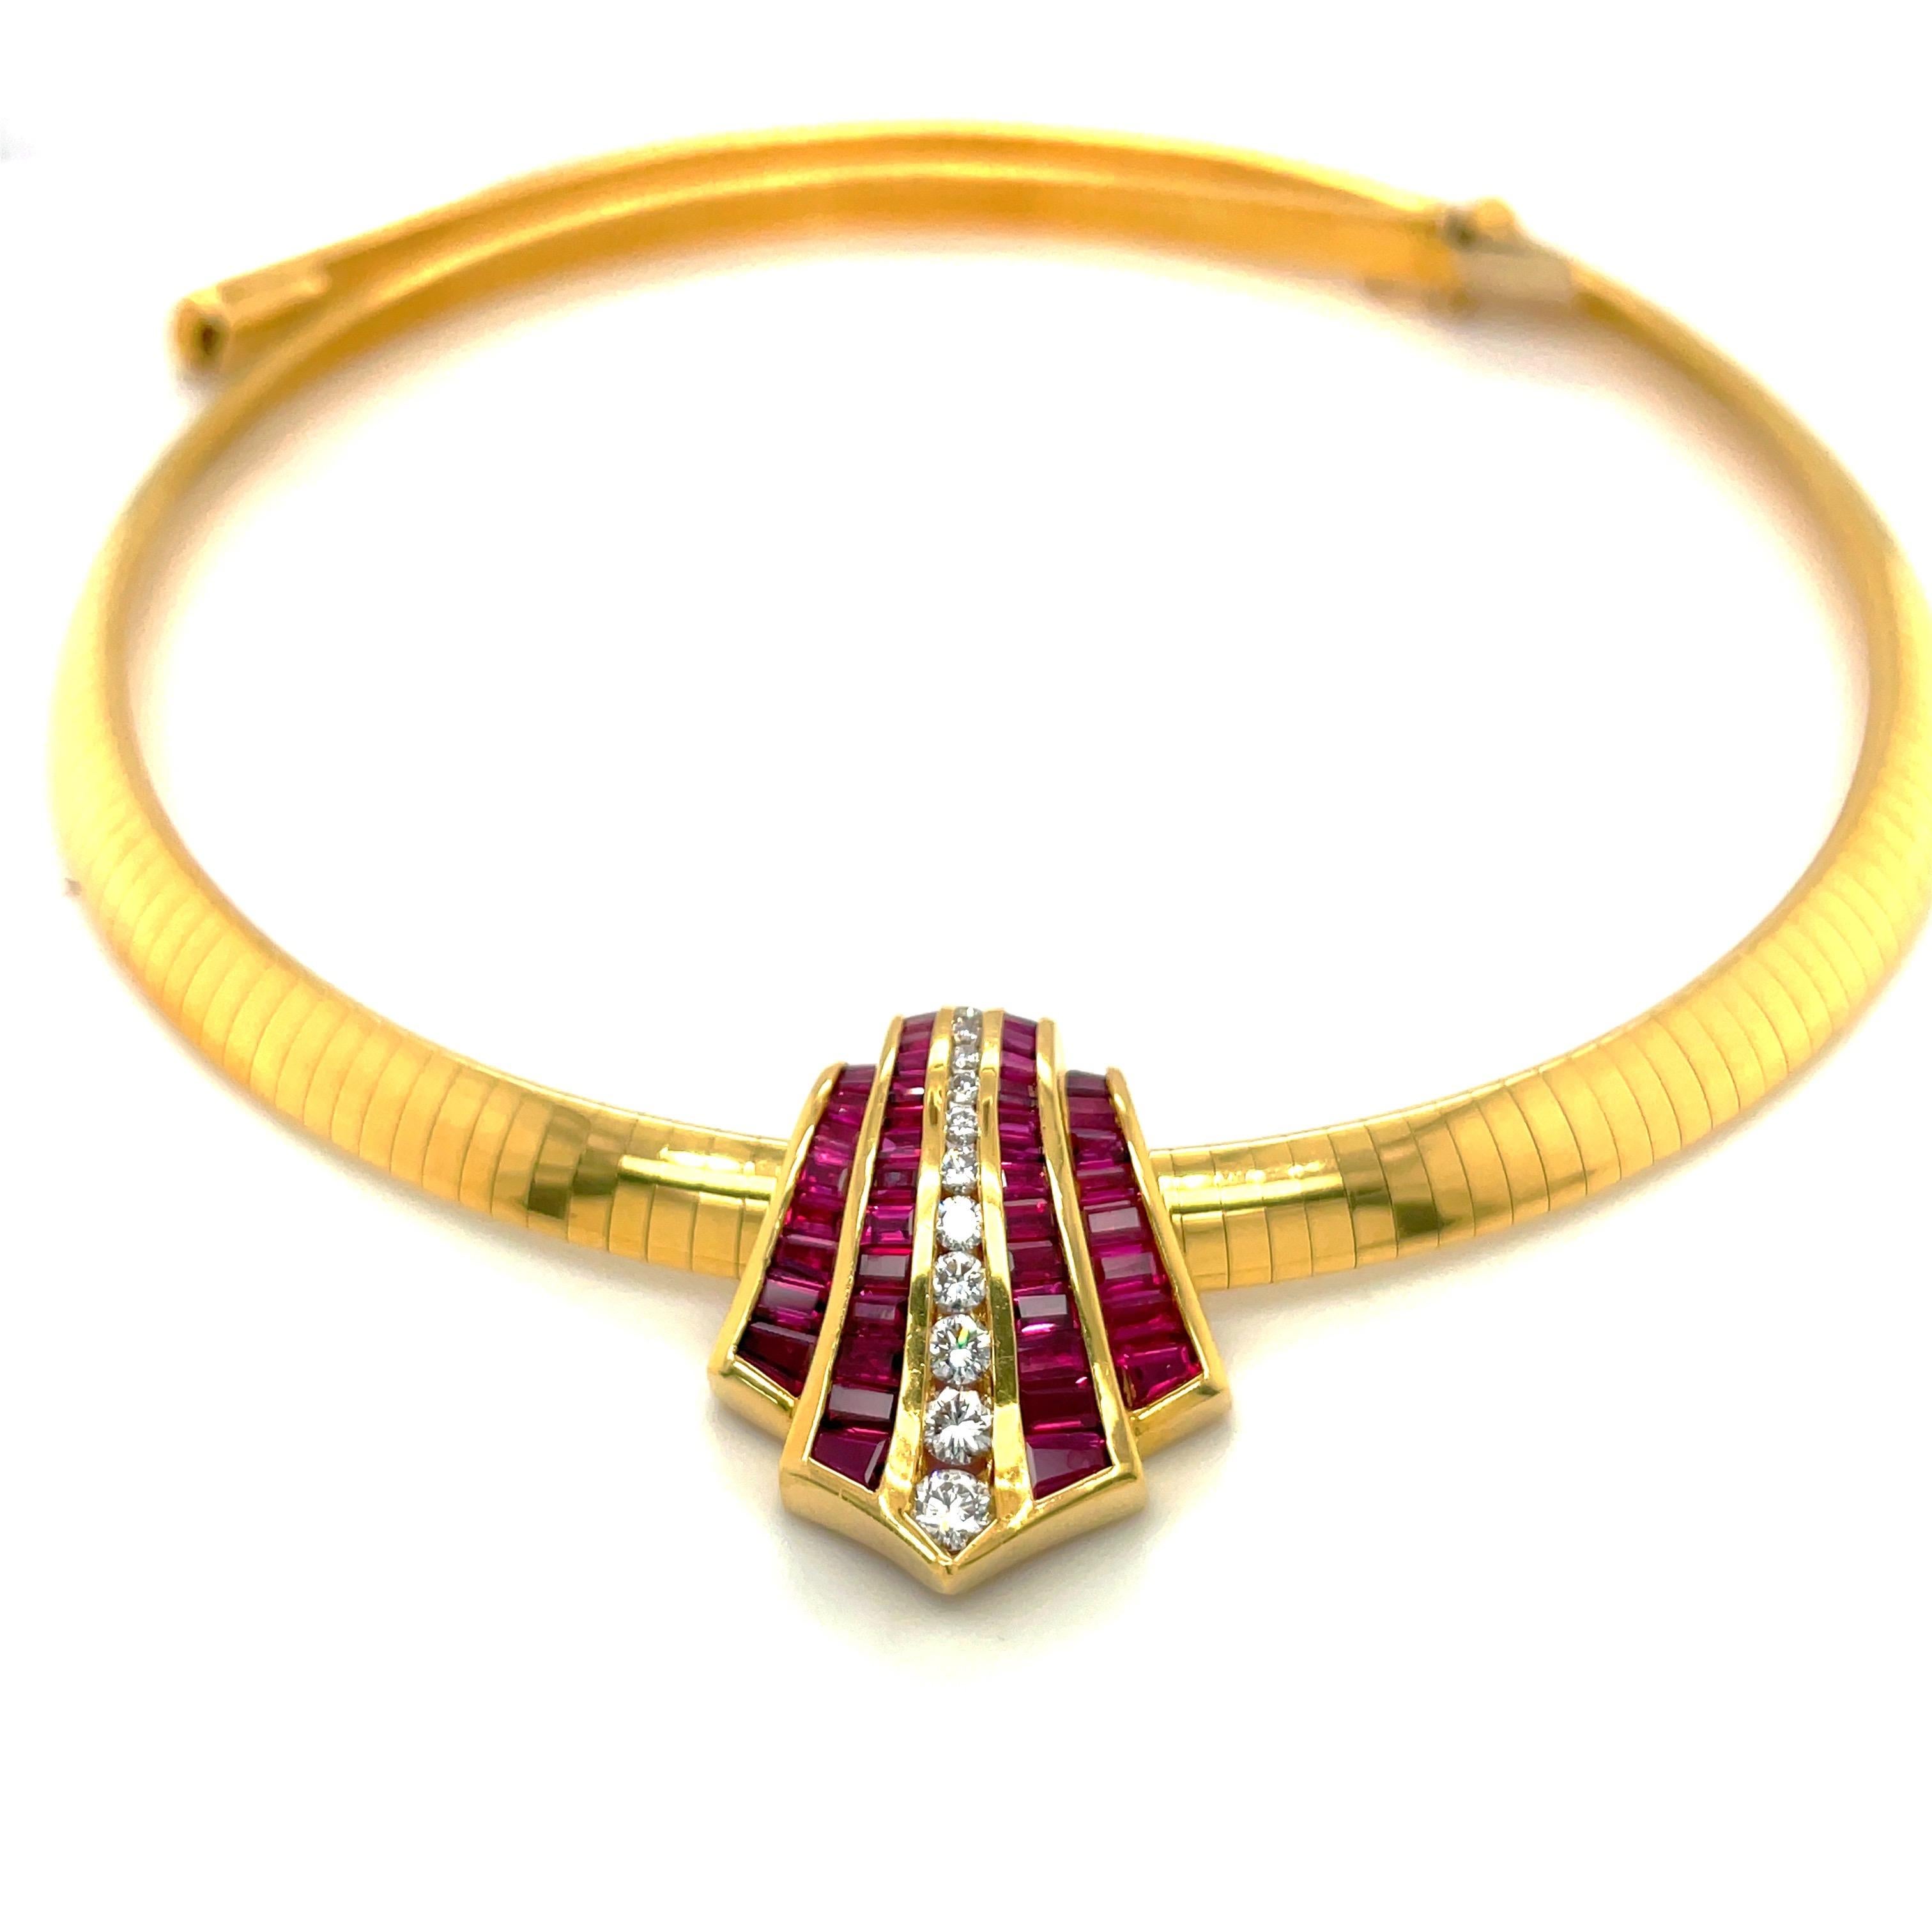 Design/One, joailliers depuis 1976. Ce collier pendentif est un parfait exemple d'artisanat d'art, avec des rubis taille baguette et des diamants ronds de taille brillant sertis de manière invisible. Les 4 sections de rubis et la rangée unique de